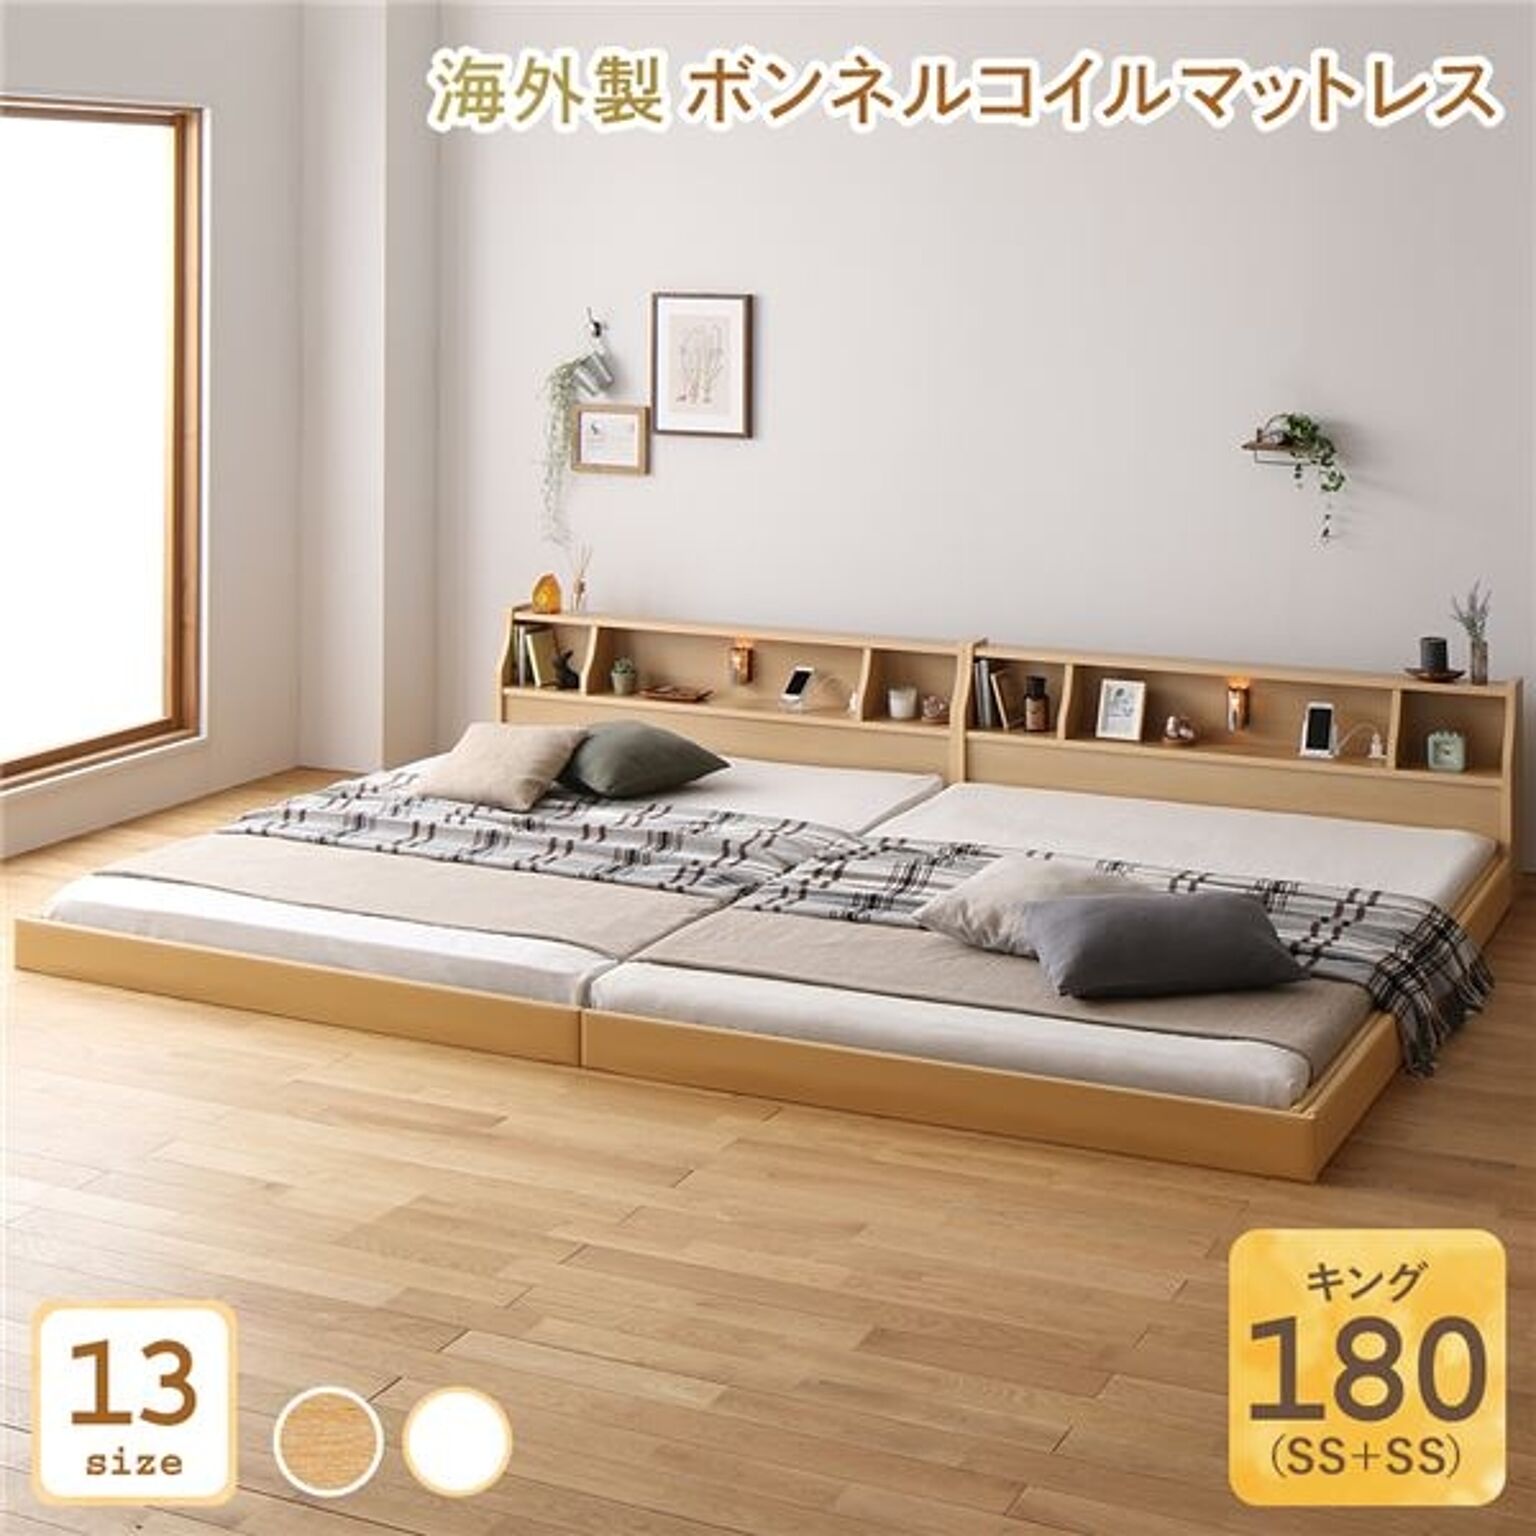 キングサイズ ベッド 連結 日本製 ロータイプ 木製 照明付き 棚付き